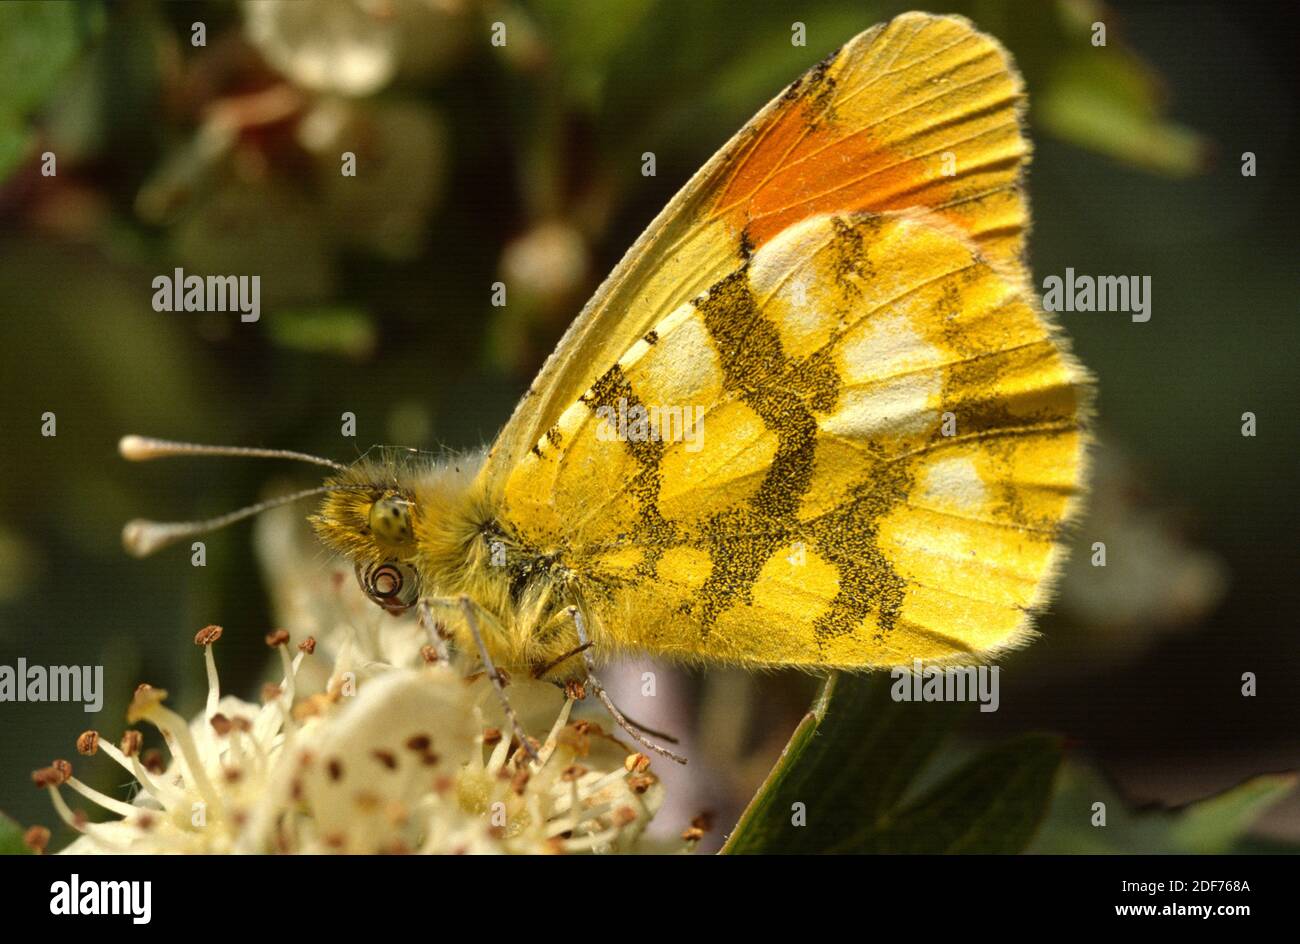 La punta arancione della Provenza (Anthocharis euphenoides) è una farfalla originaria della penisola iberica, della Francia meridionale e dell'Italia. Adulto maschio. Foto Stock